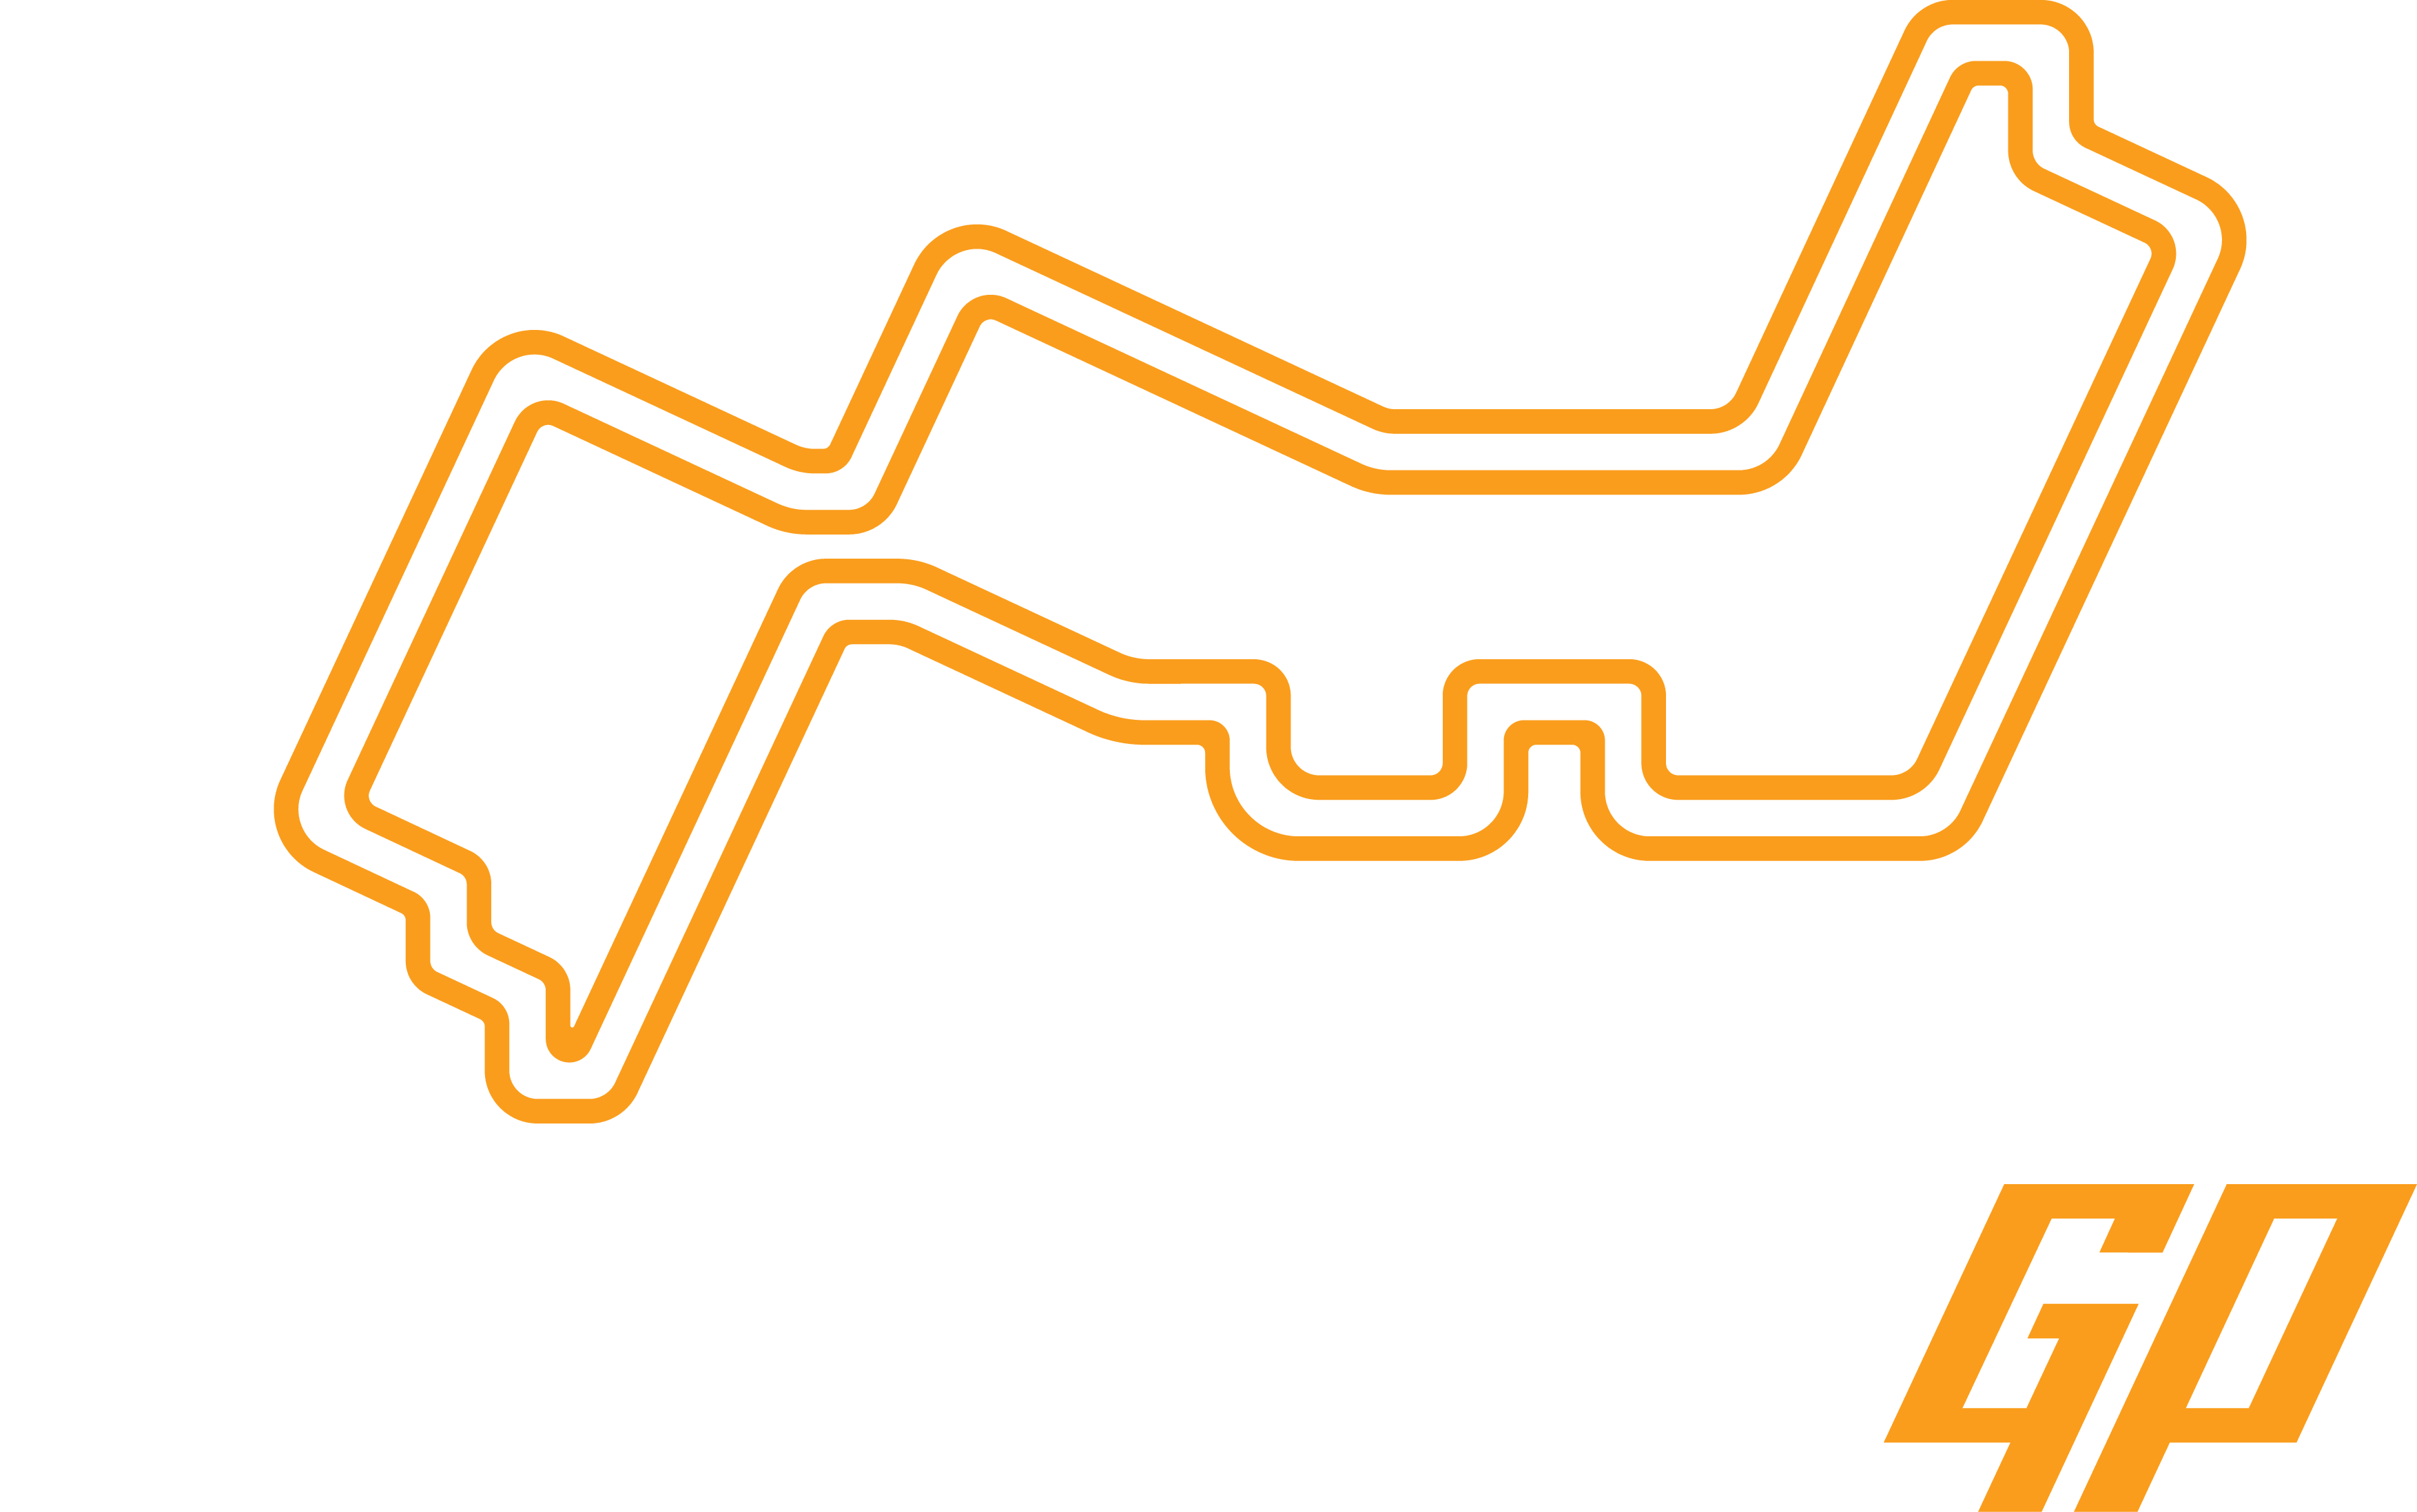 The F1 Formula 1 Logo, F1, Formula 1, Fia Formula One - Singapore Grand Prix Logo (3508x2195)